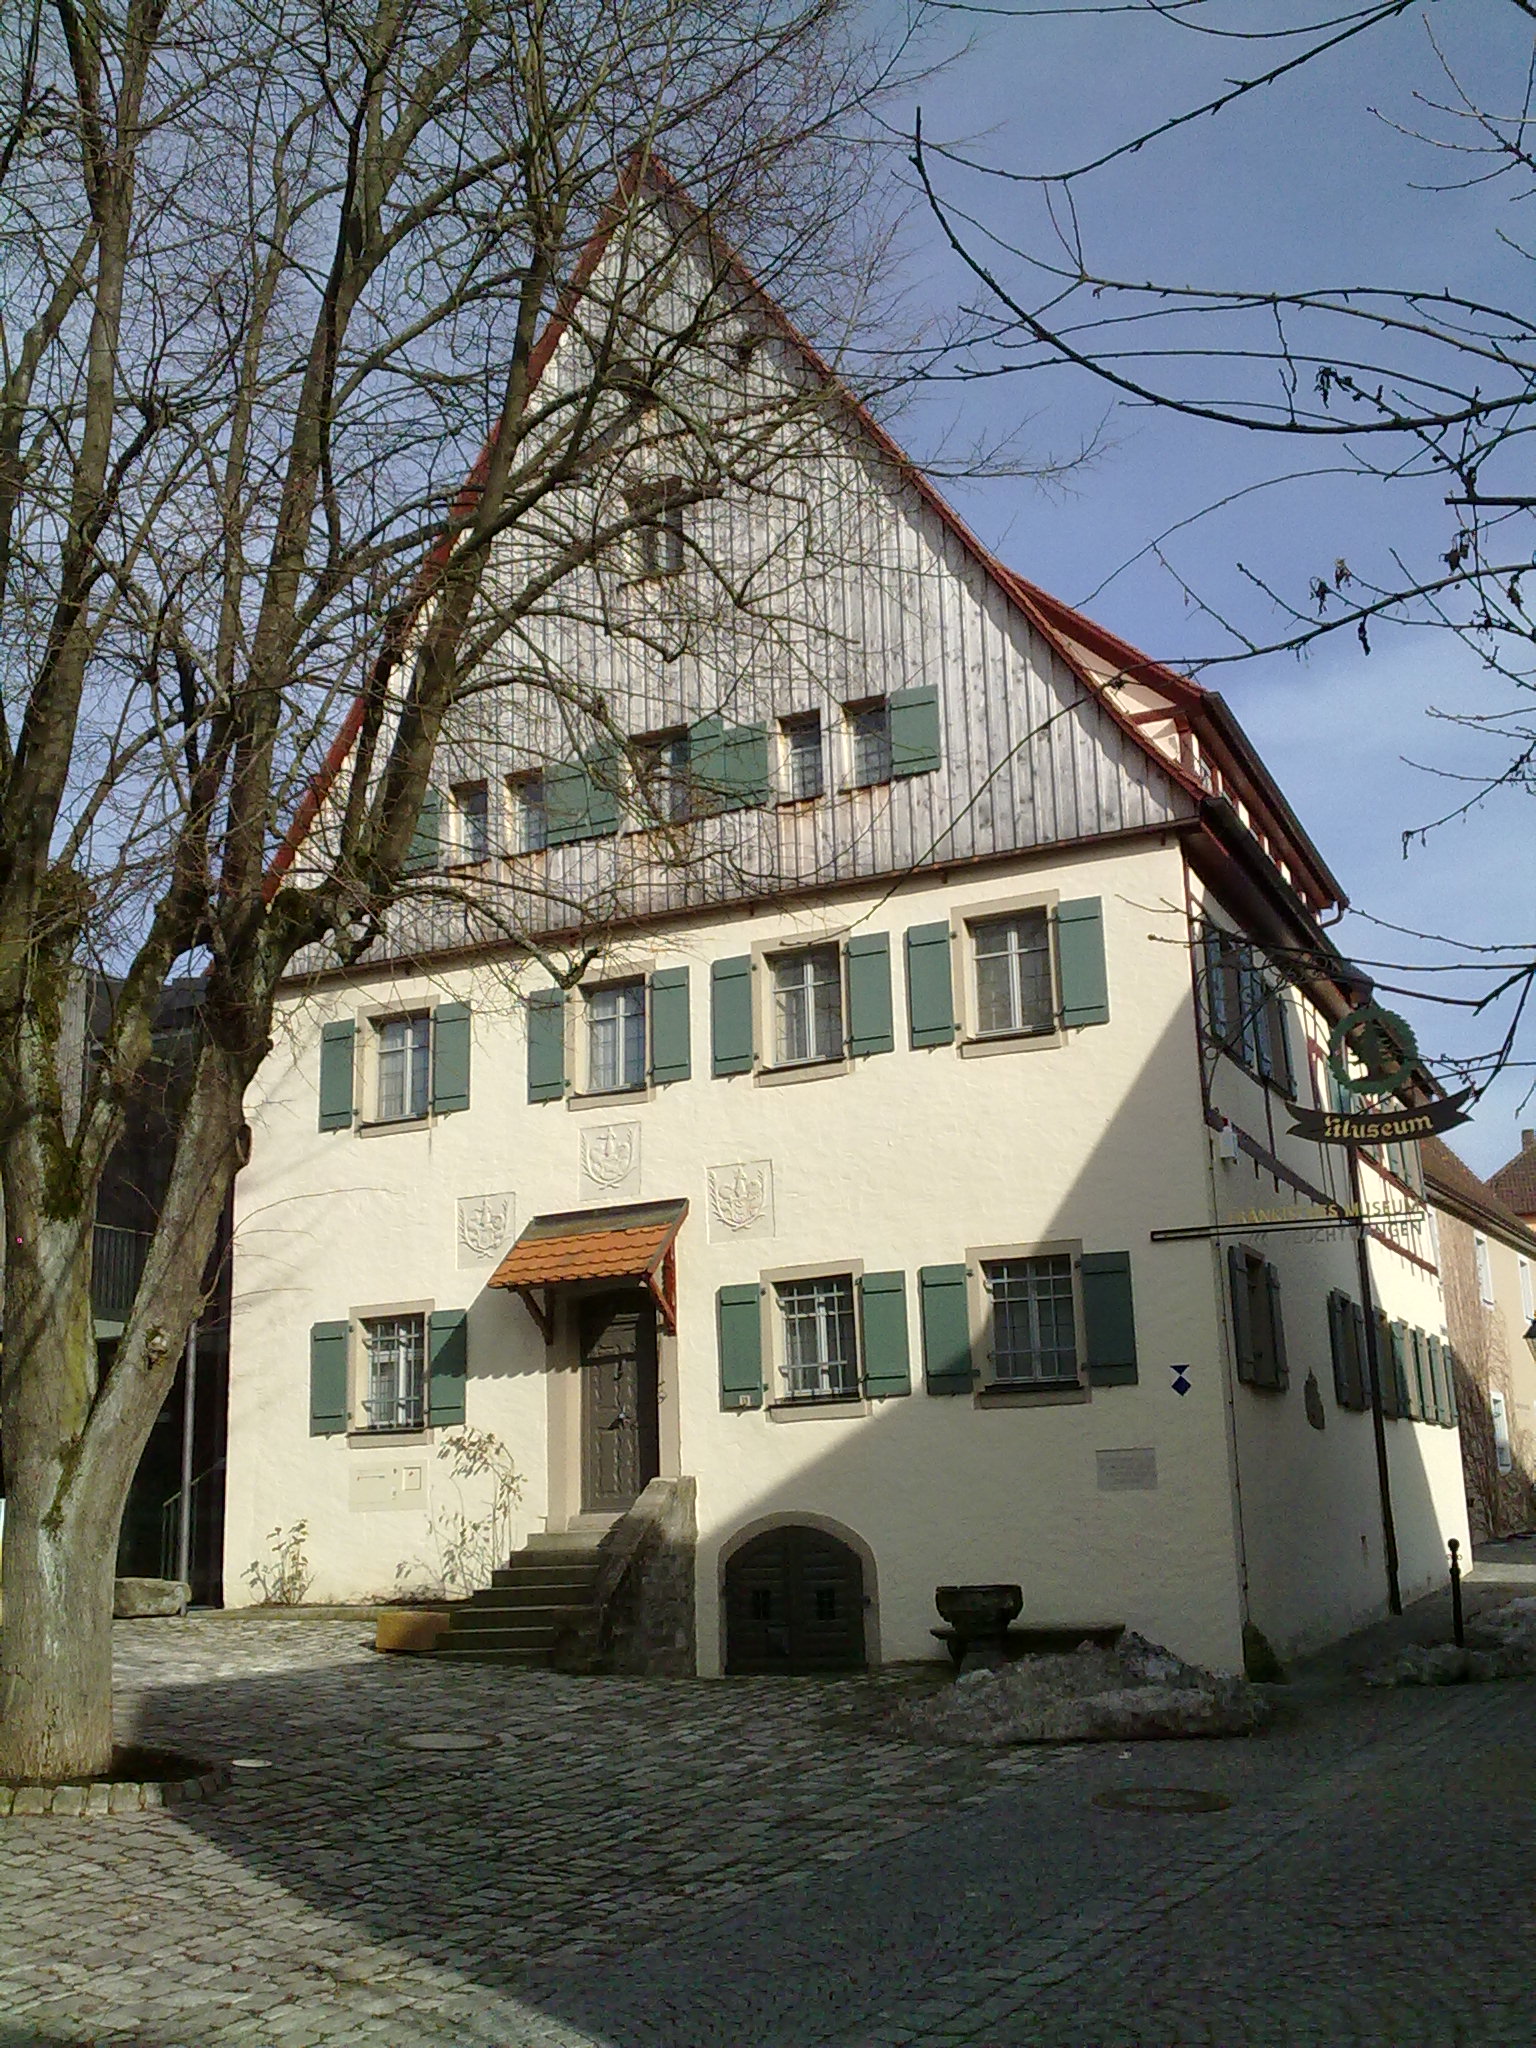 Fränkisches Museum in Feuchtwangen